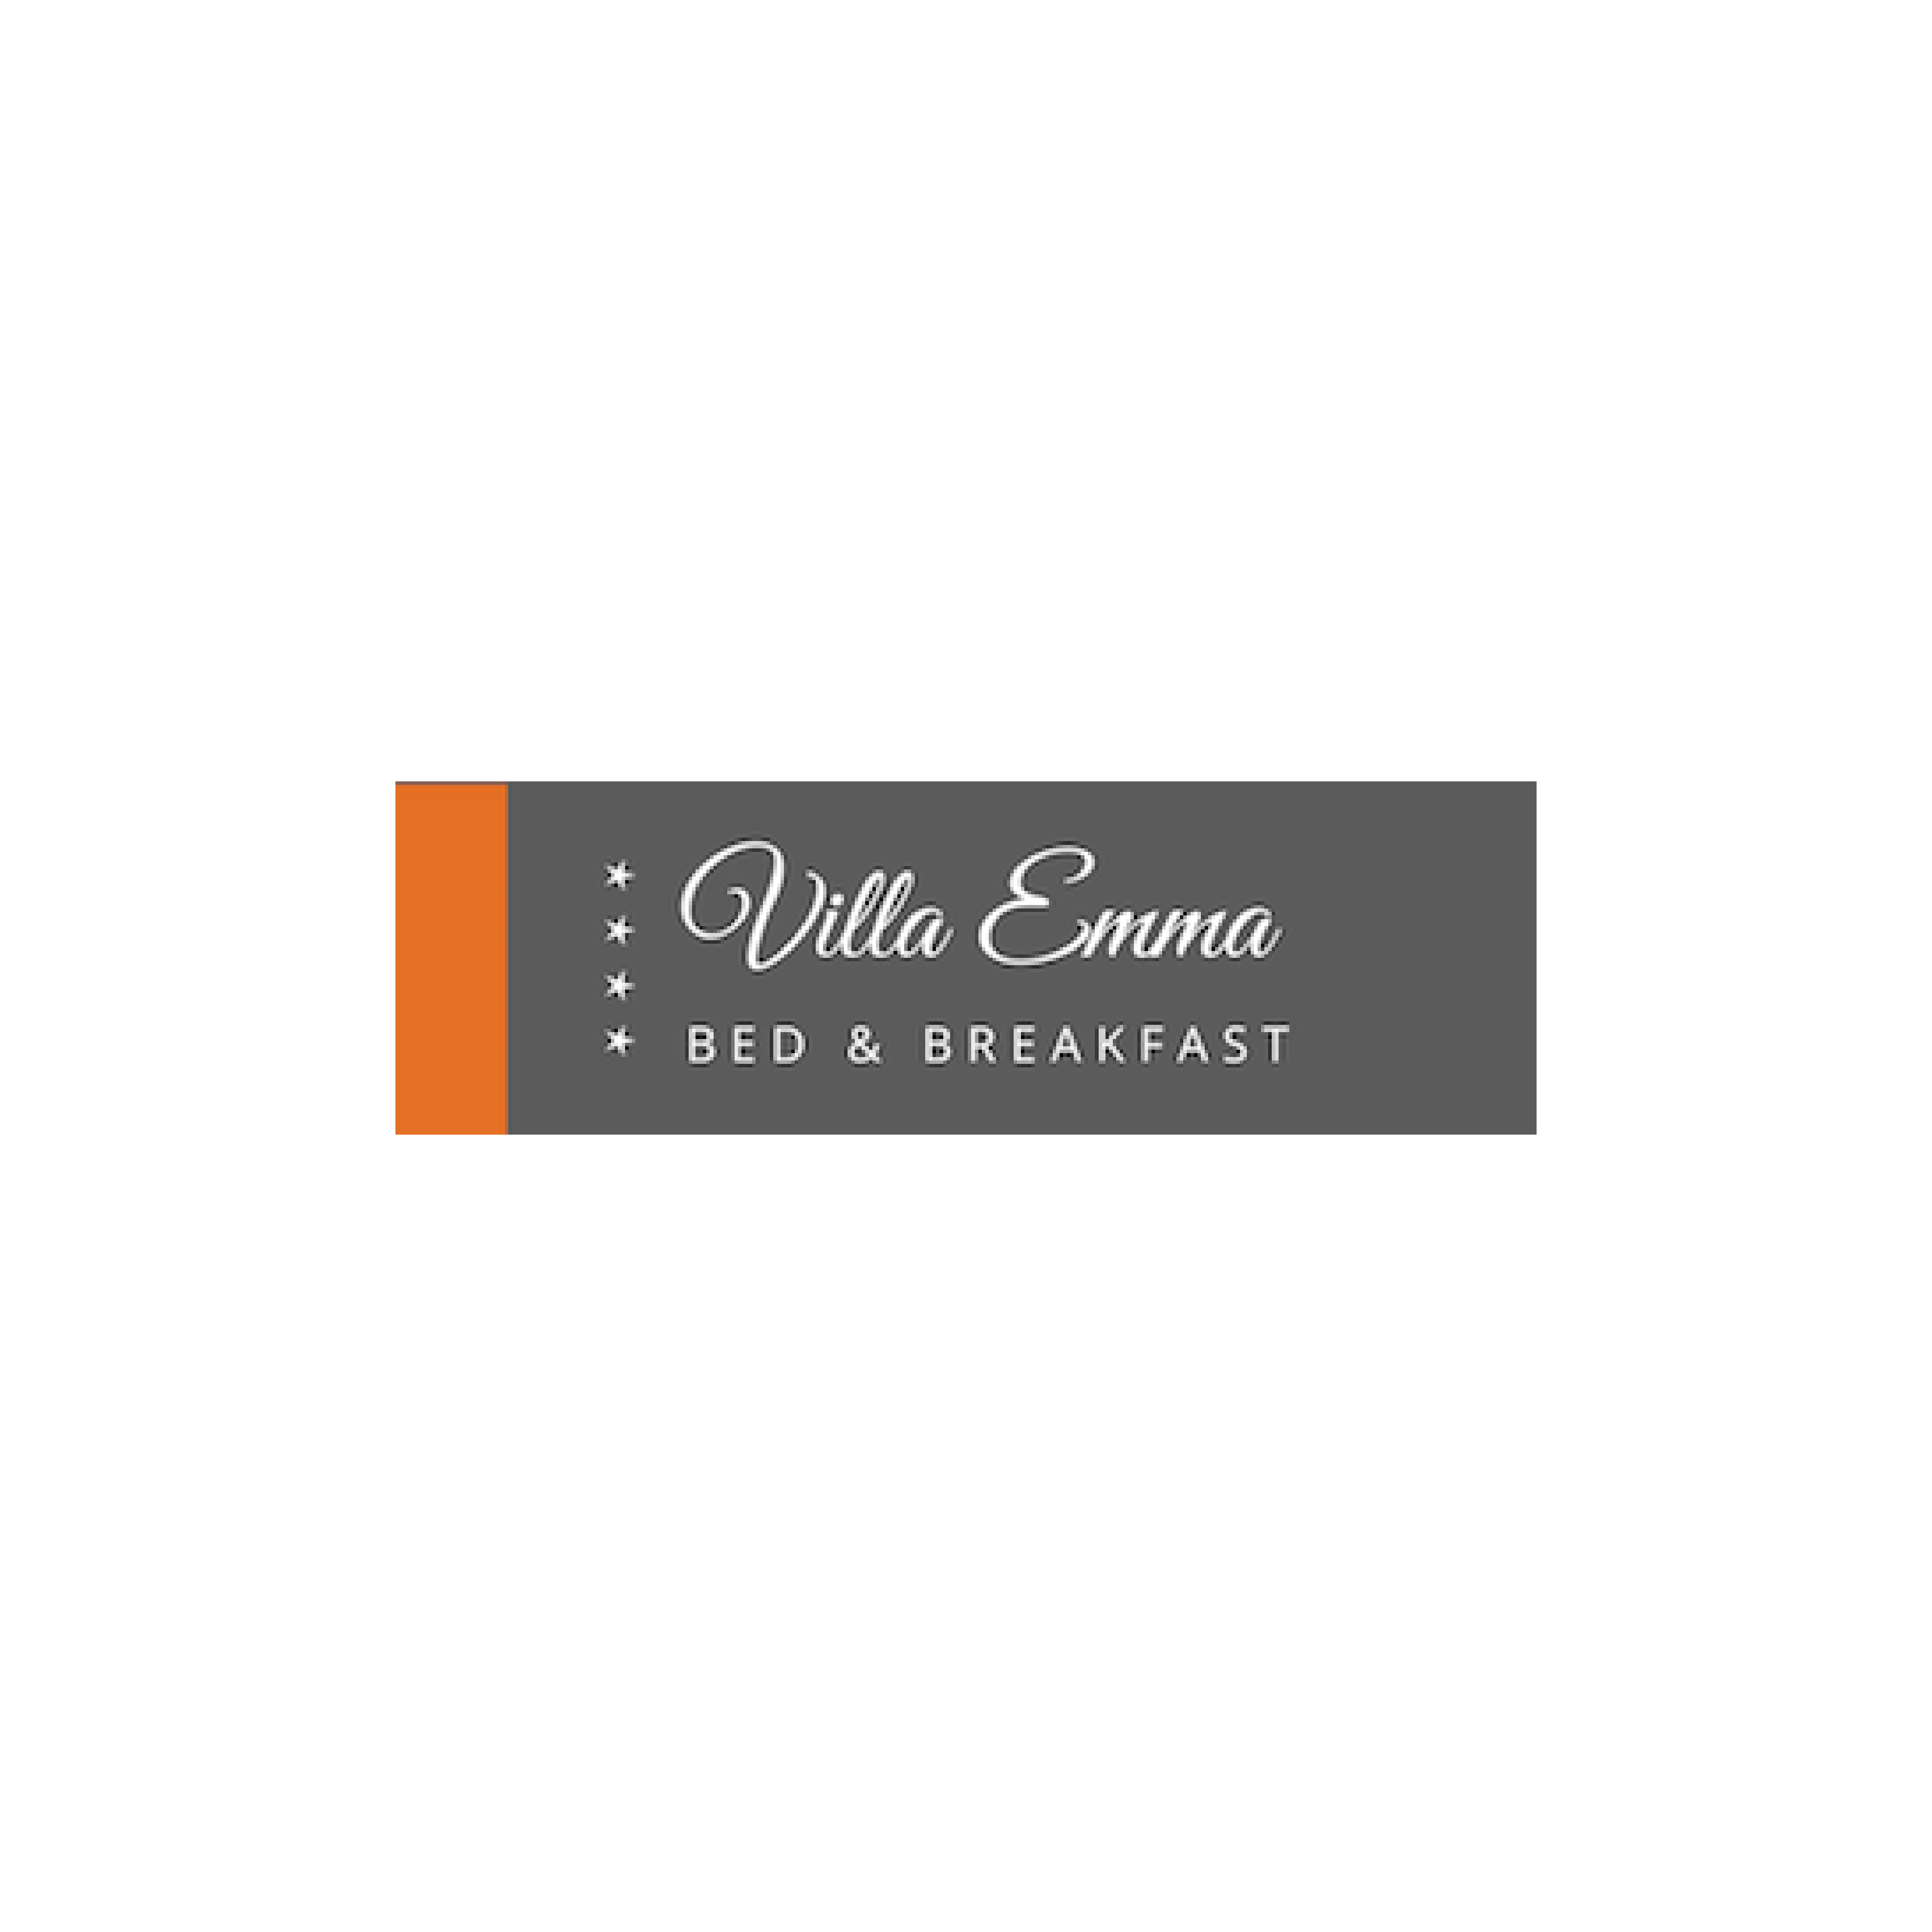 logo's_Villa Emma logo